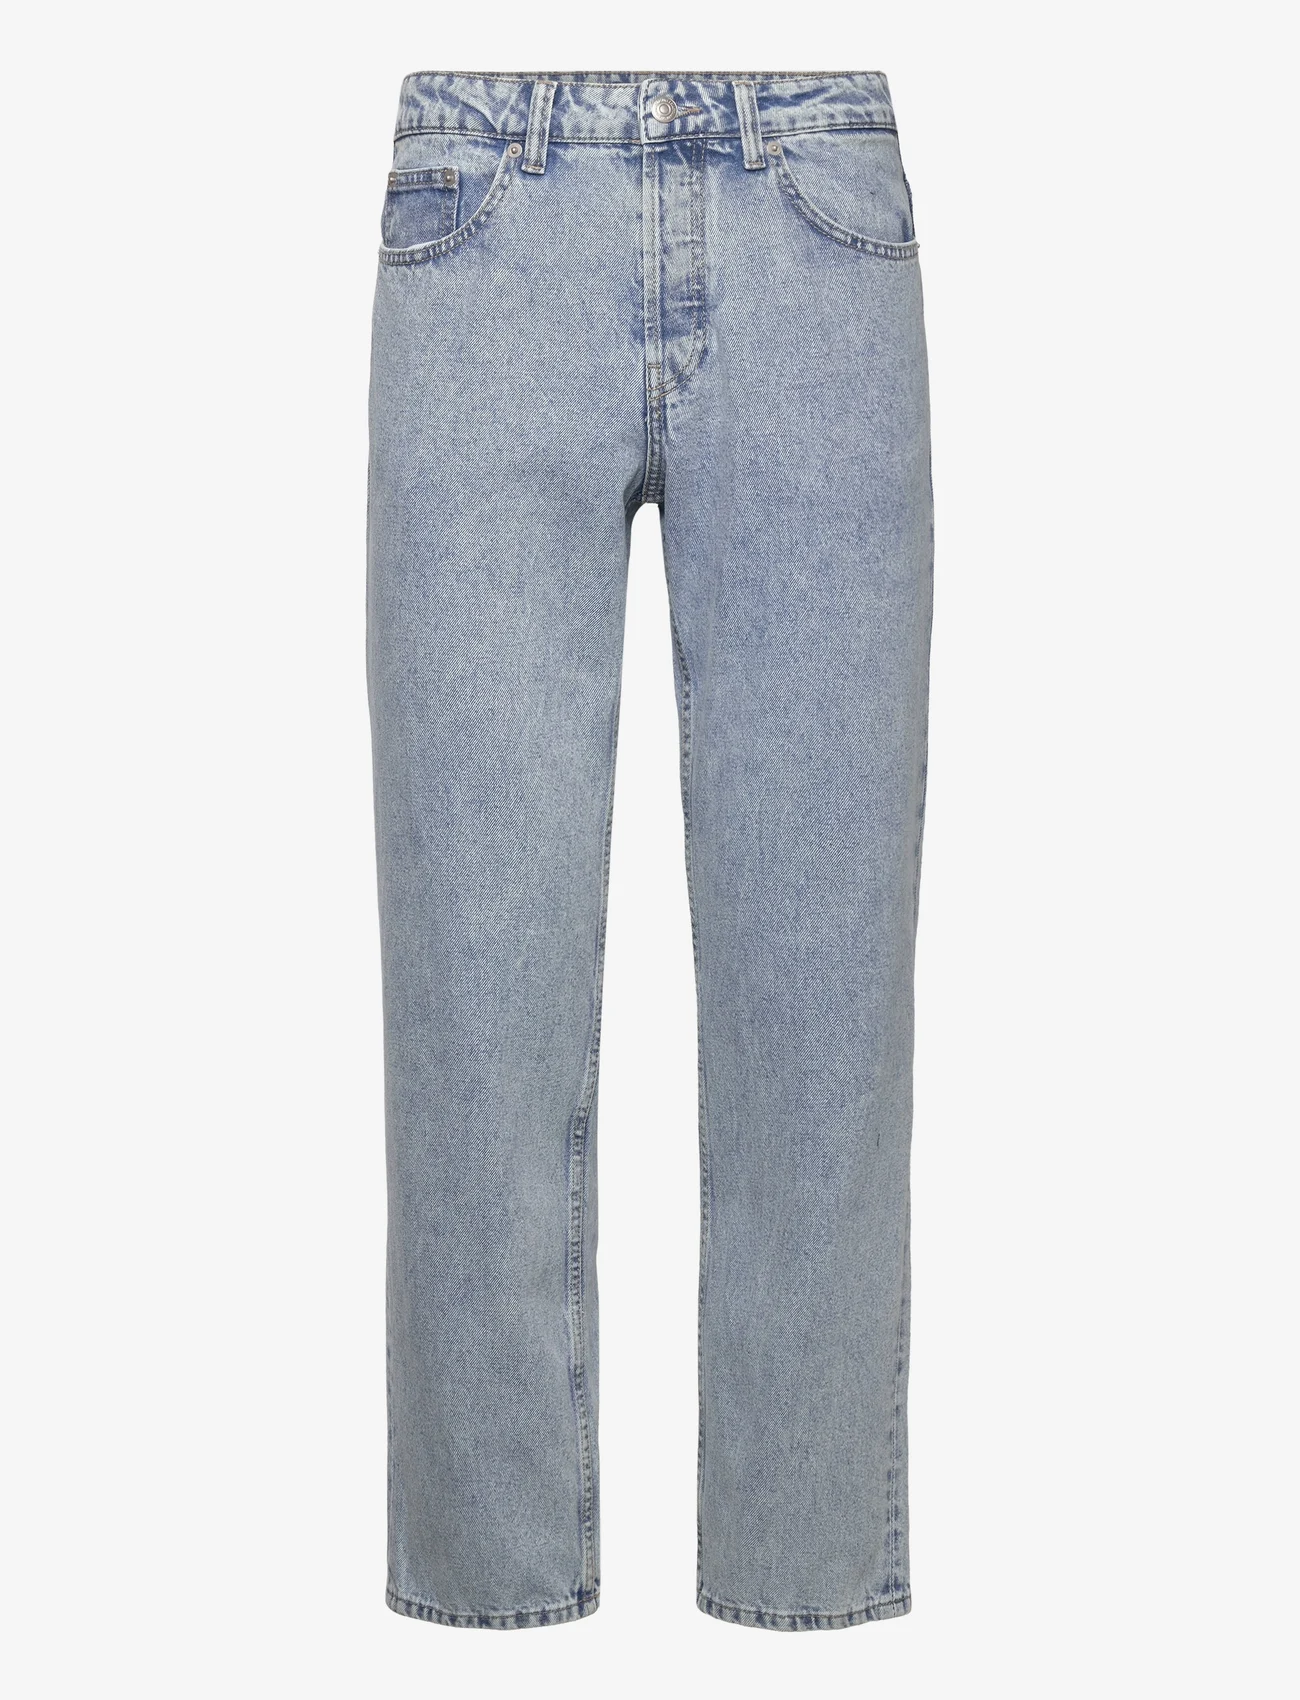 ONLY & SONS - ONSEDGE STRAIGHT ONE LBD 8001 PIM DNM VD - regular jeans - light blue denim - 0